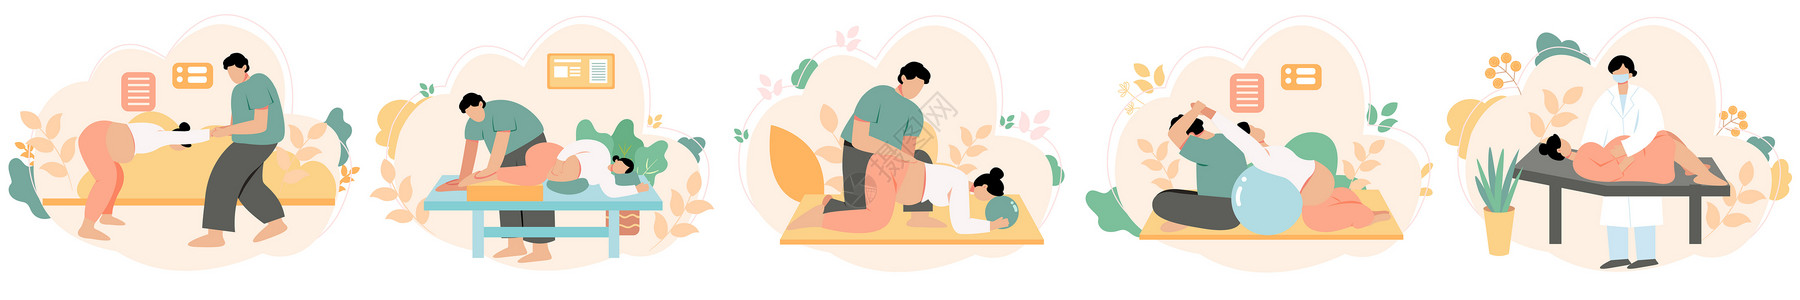 准生孕妇产前护理训练孕期锻炼svg矢量插画元素插画